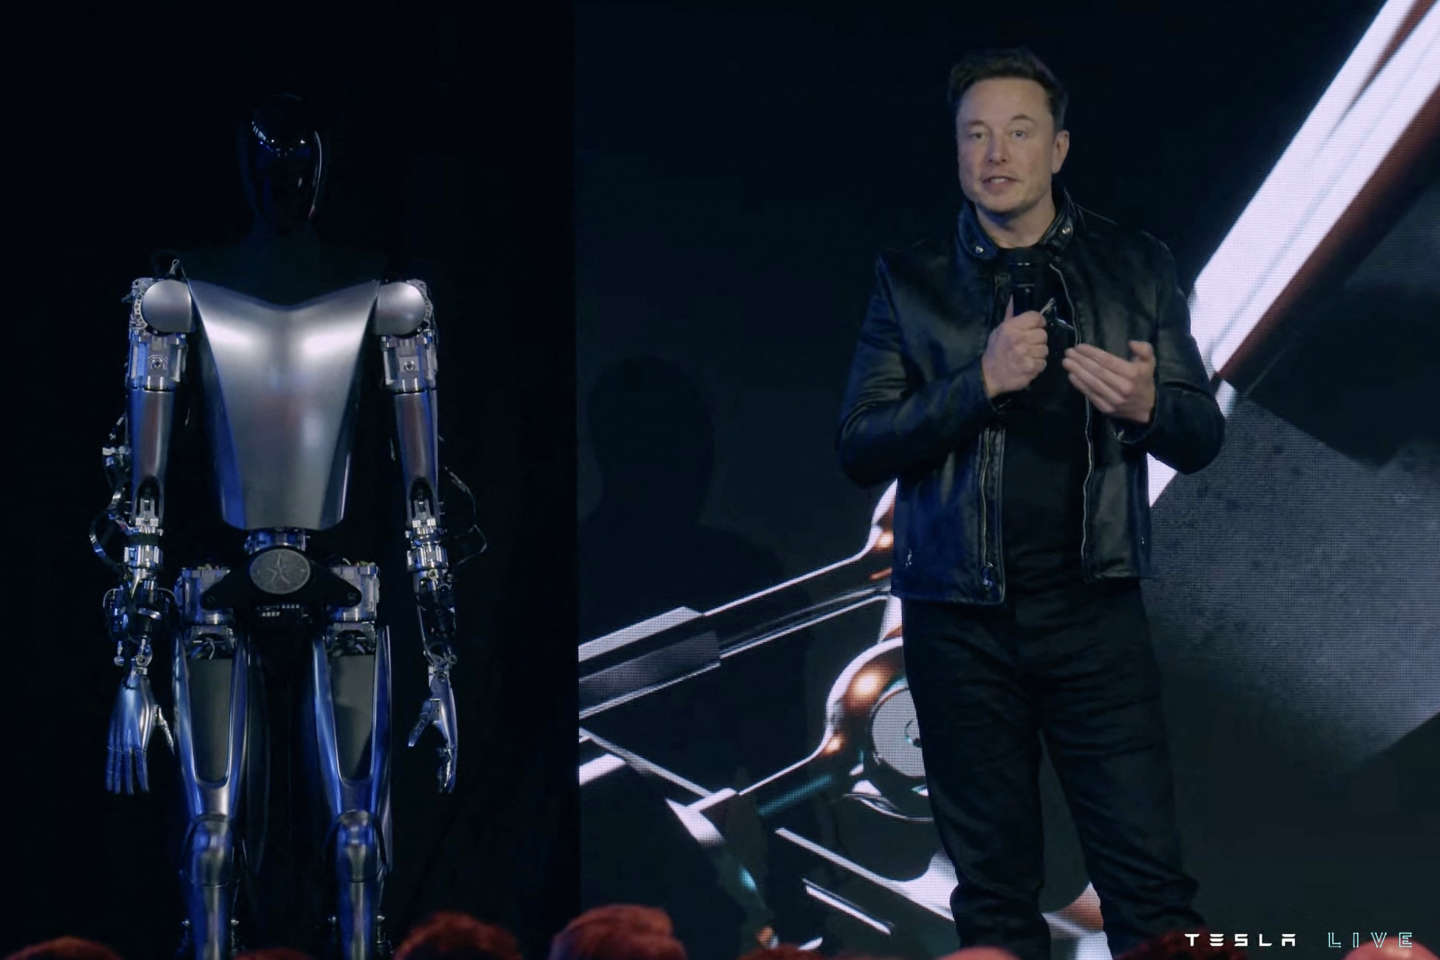 Avec la start-up X.AI, l’ambiguïté d’Elon Musk sur l’intelligence artificielle continue